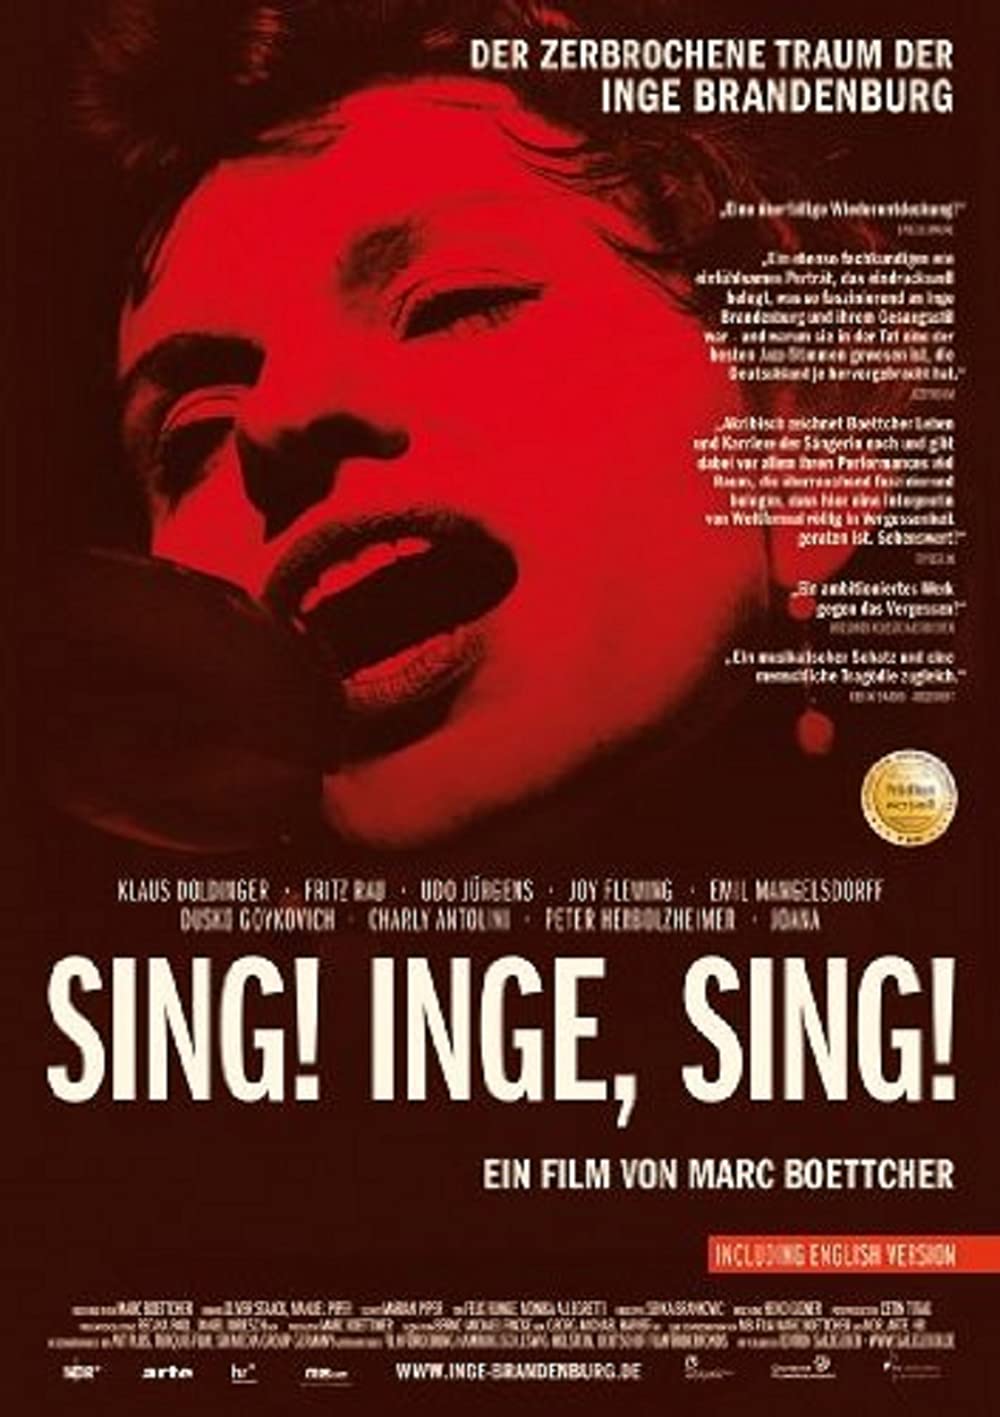 Filmbeschreibung zu Sing! Inge, Sing! - Der zerbrochene Traum der Inge Brandenburg